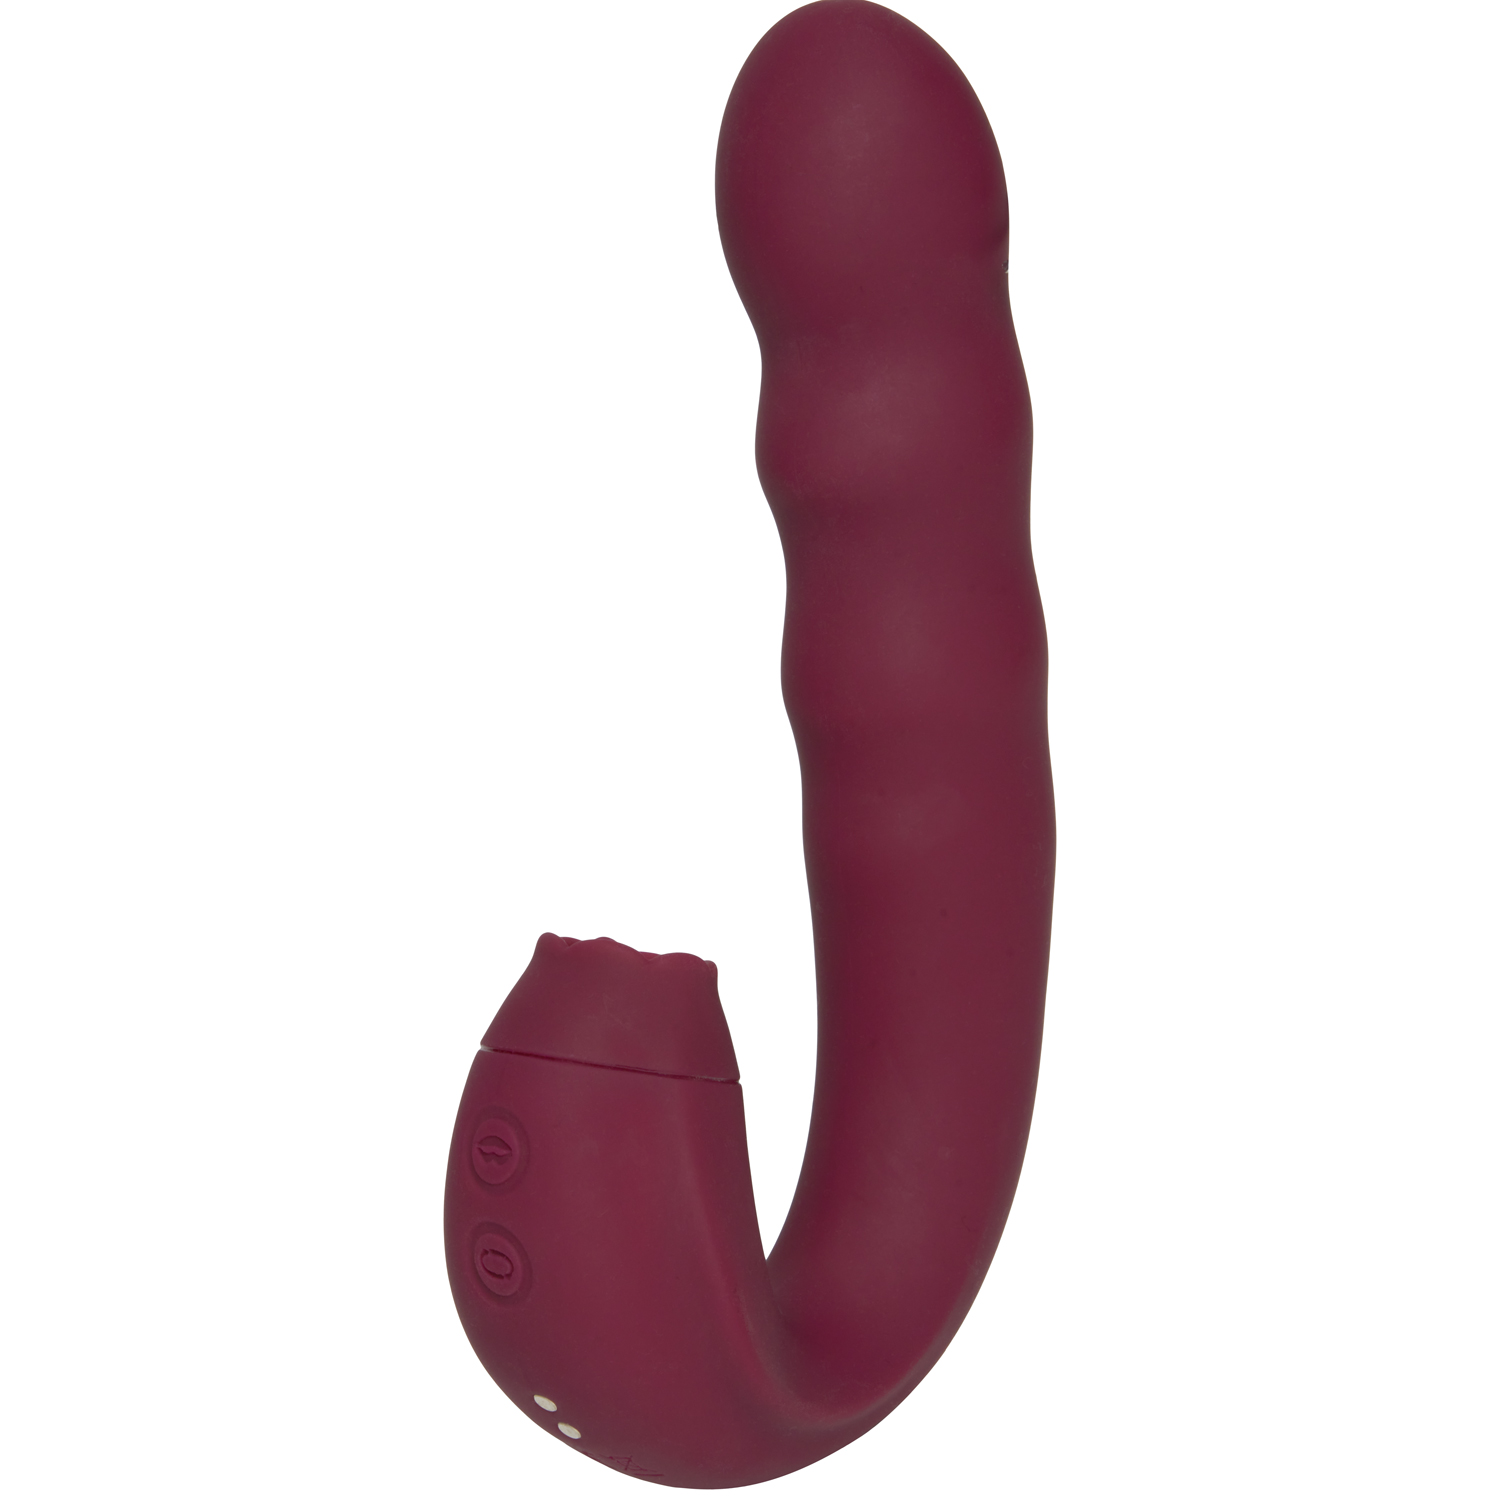 Sinful Lick and Spin G-punktsstimulator - Bordeaux | Vibratorer//Favoriter//REA för kvinnor//Kvinnor//G-punktsvibrator//Vattentät Vibrator//Laddningsbar Vibrator//Sinful//Klitorisvibrator//Dubbel Vibrator//Sinful Vibratorer | Intimast